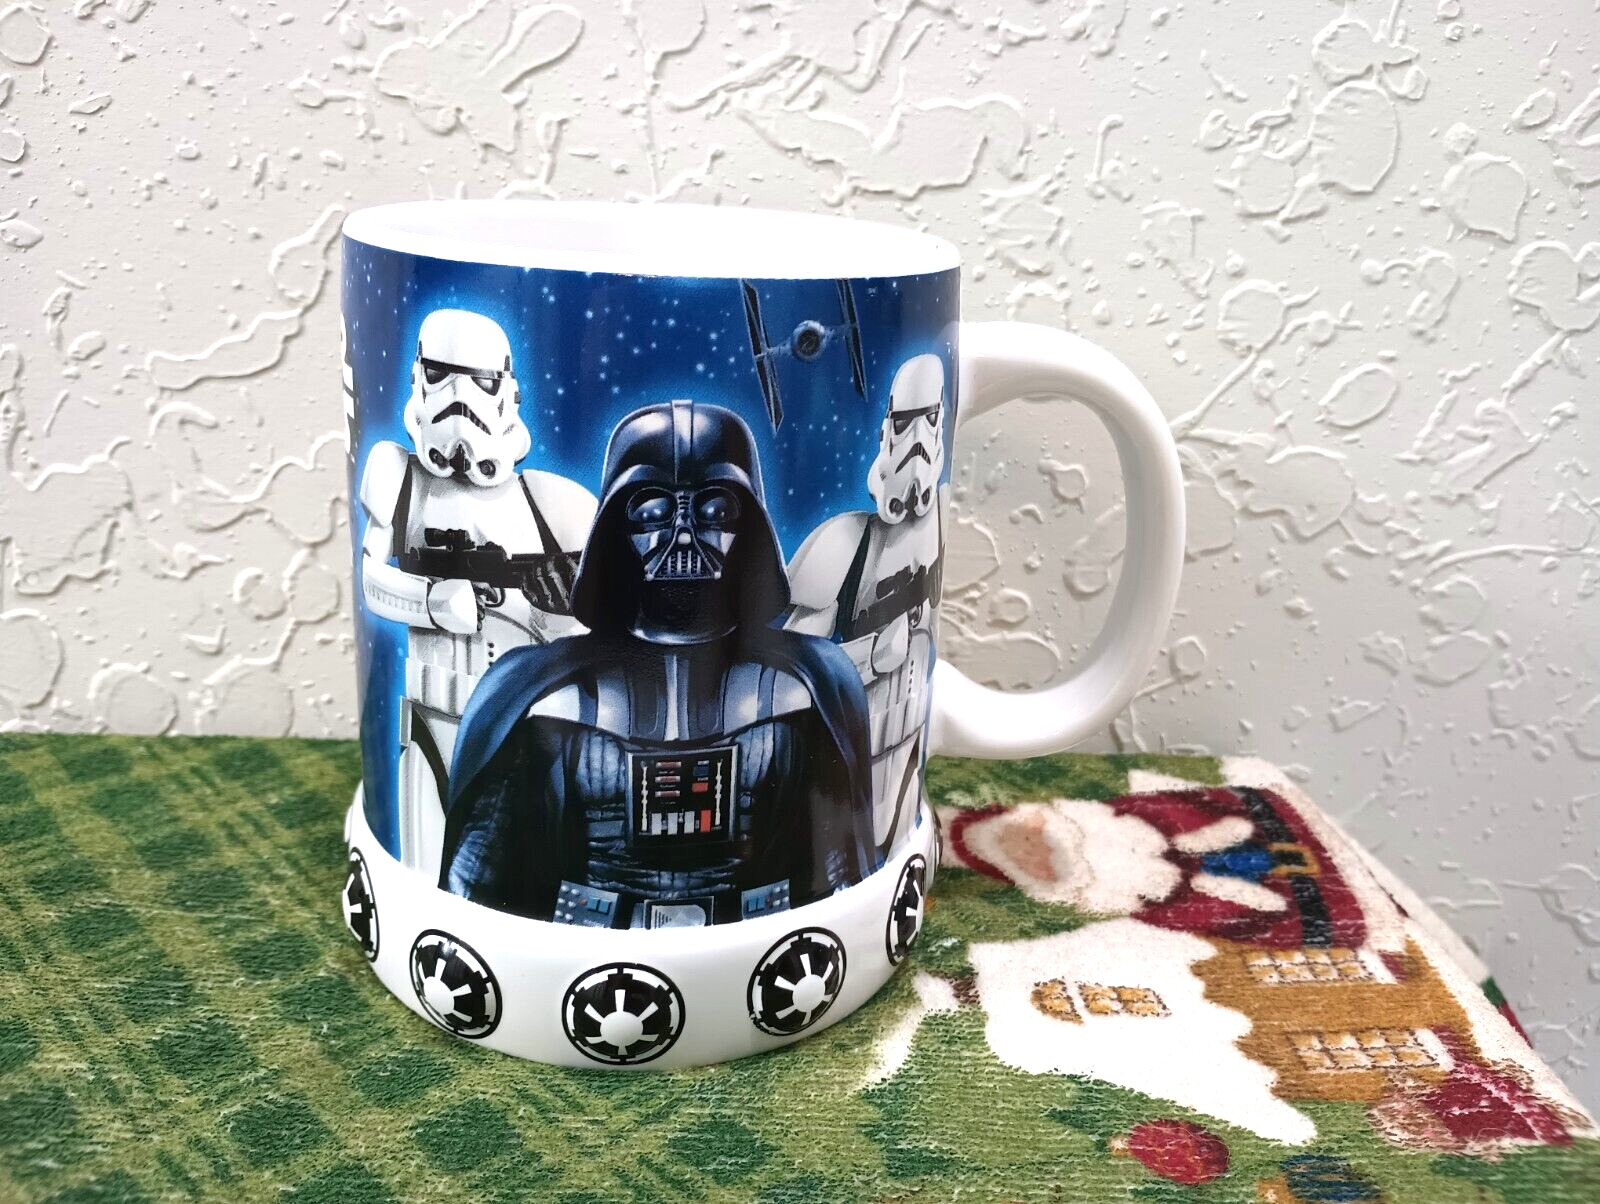 Genuine Galerie STAR WARS 20 oz Coffee Mug w/Darth Vader, Luke, Leia, Yoda, R2D2